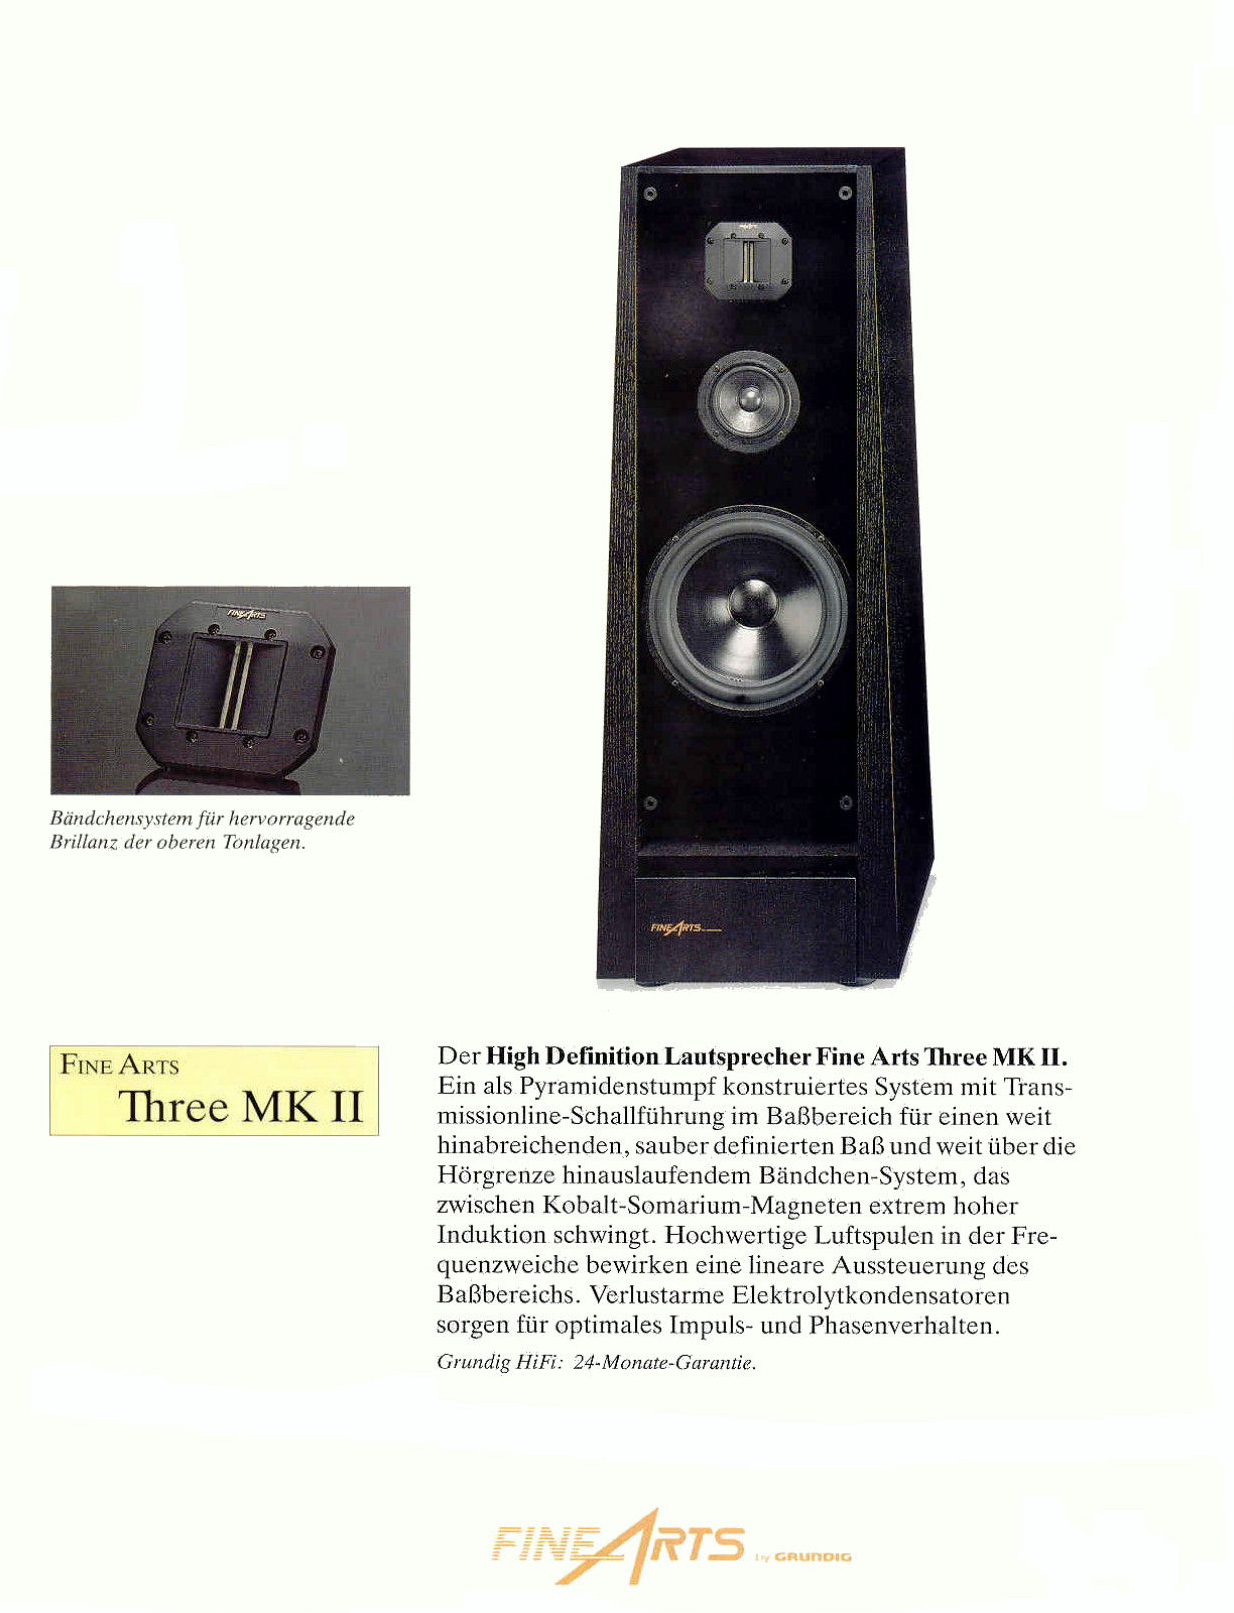 Fine Arts Three MK II-Prospekt-1992.jpg